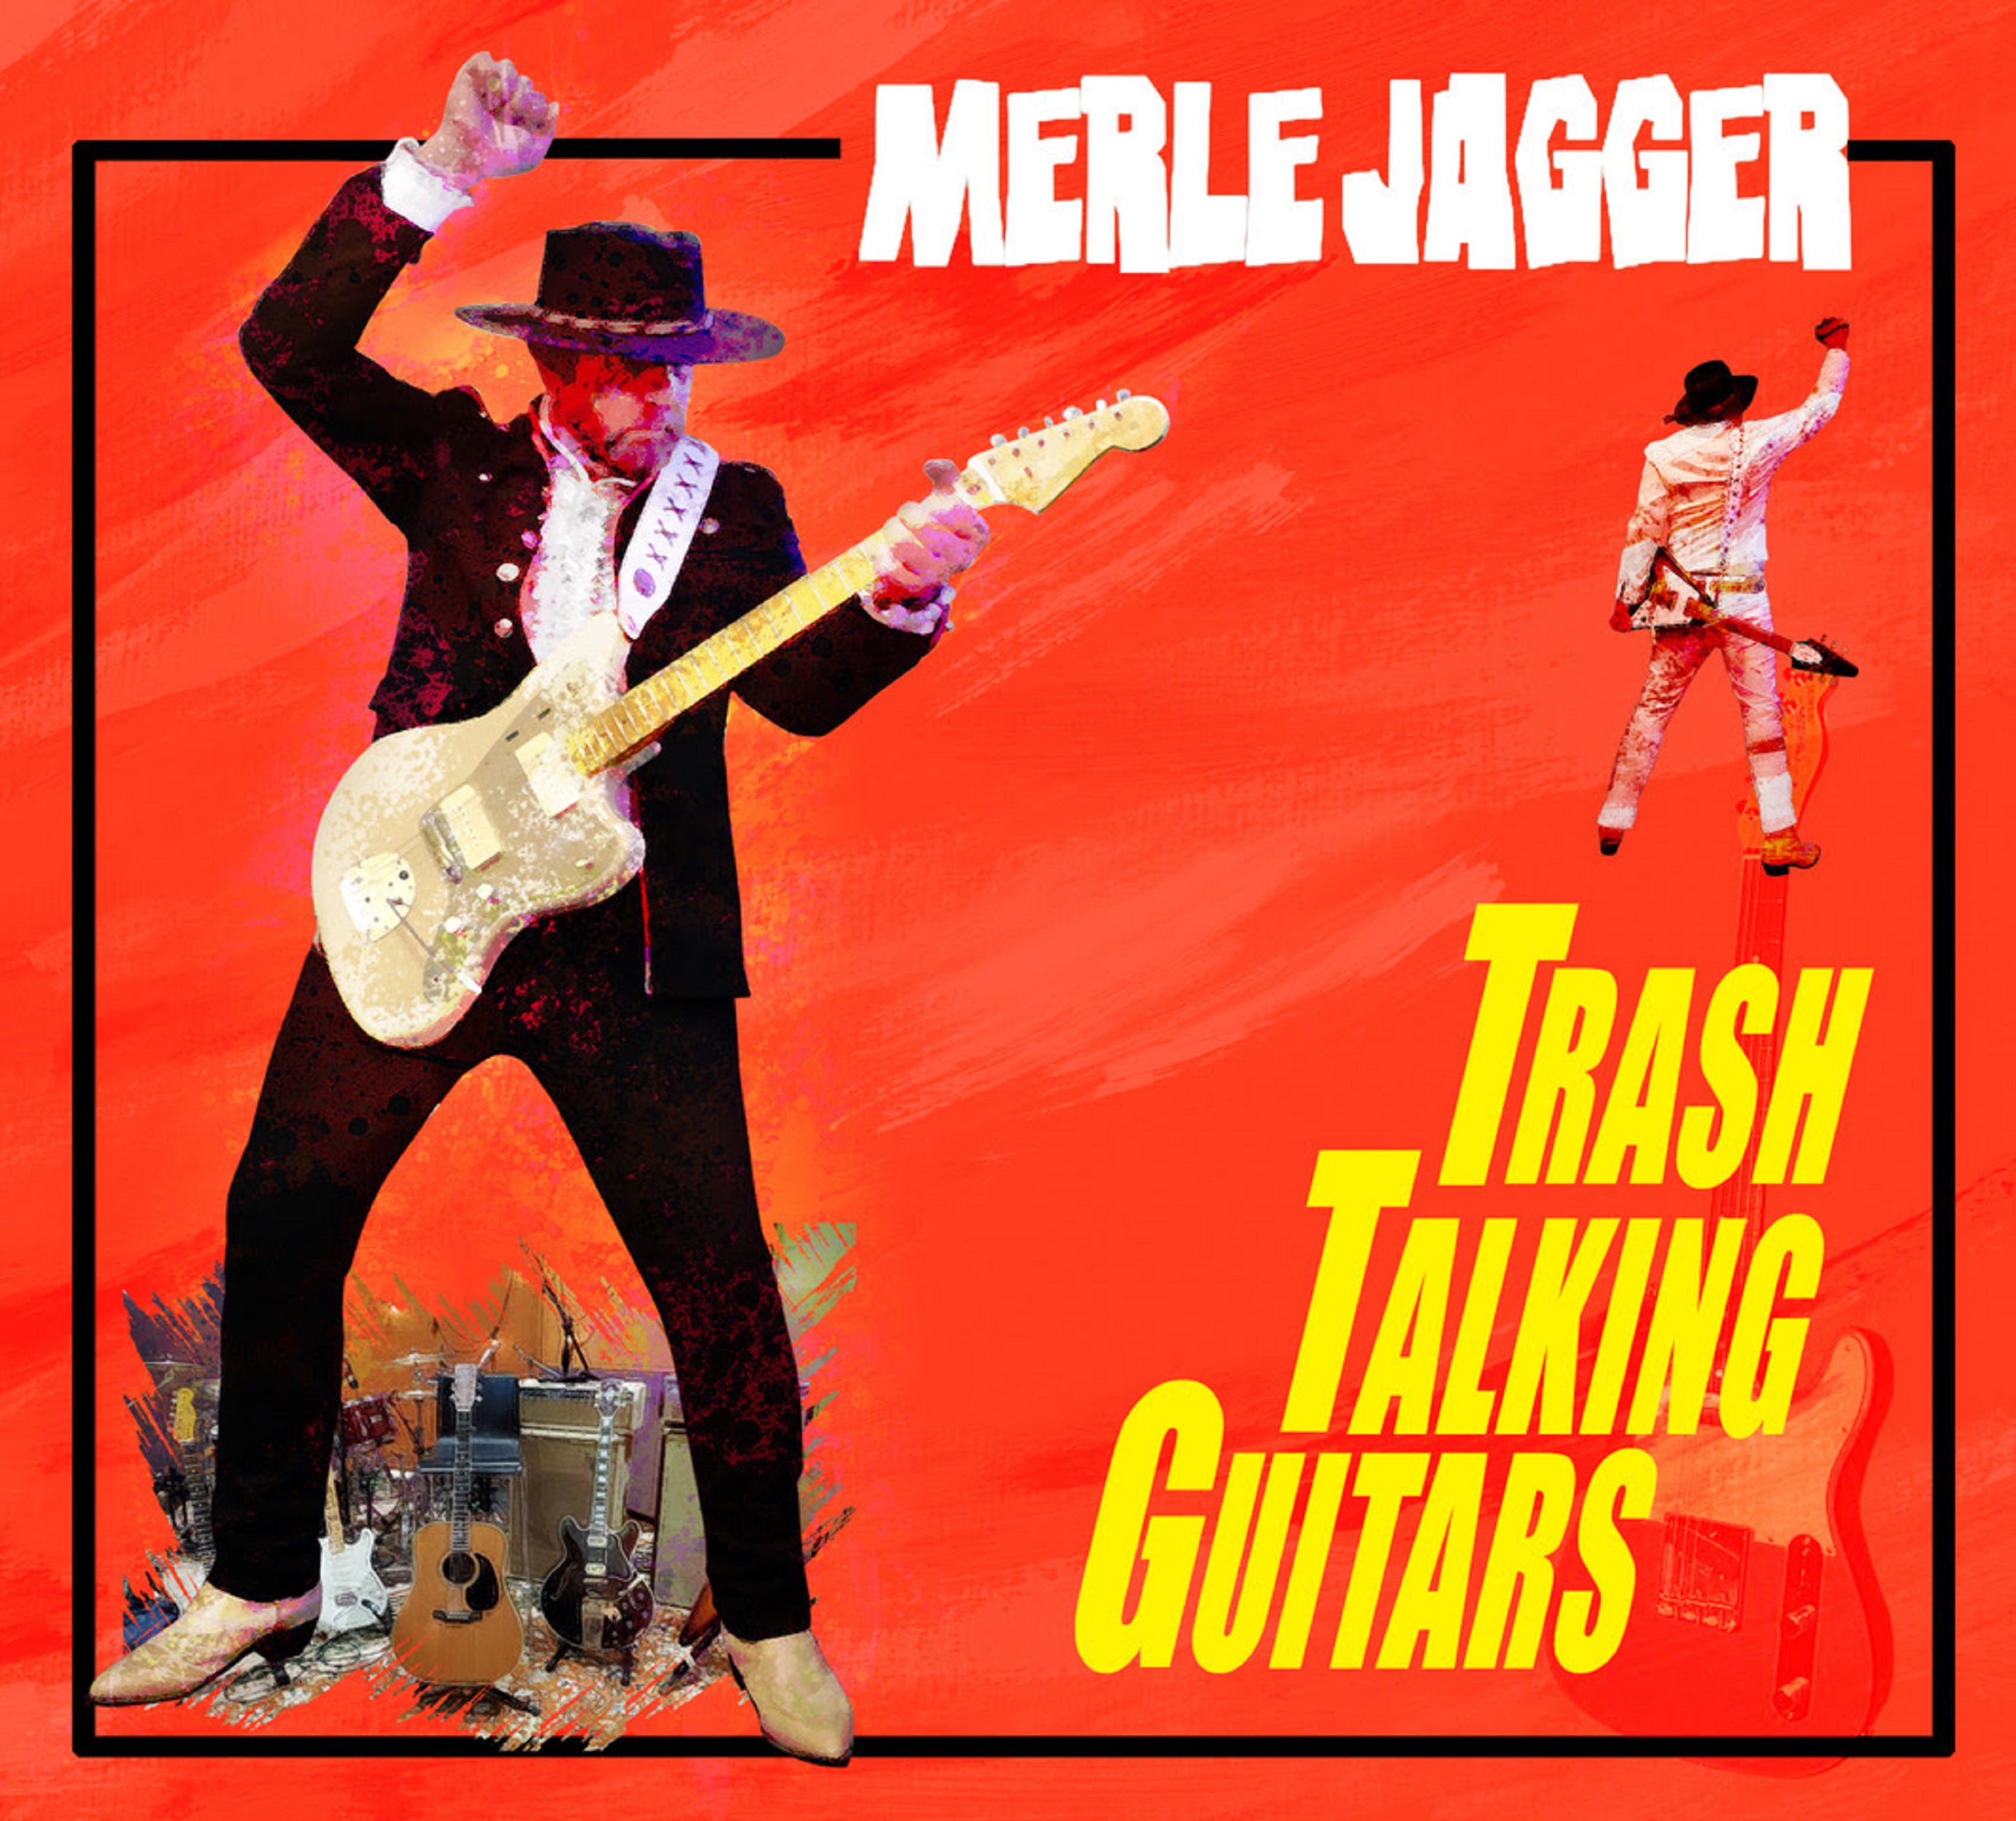 LA Ranch Rocker Merle Jagger to Release Disc July 15th